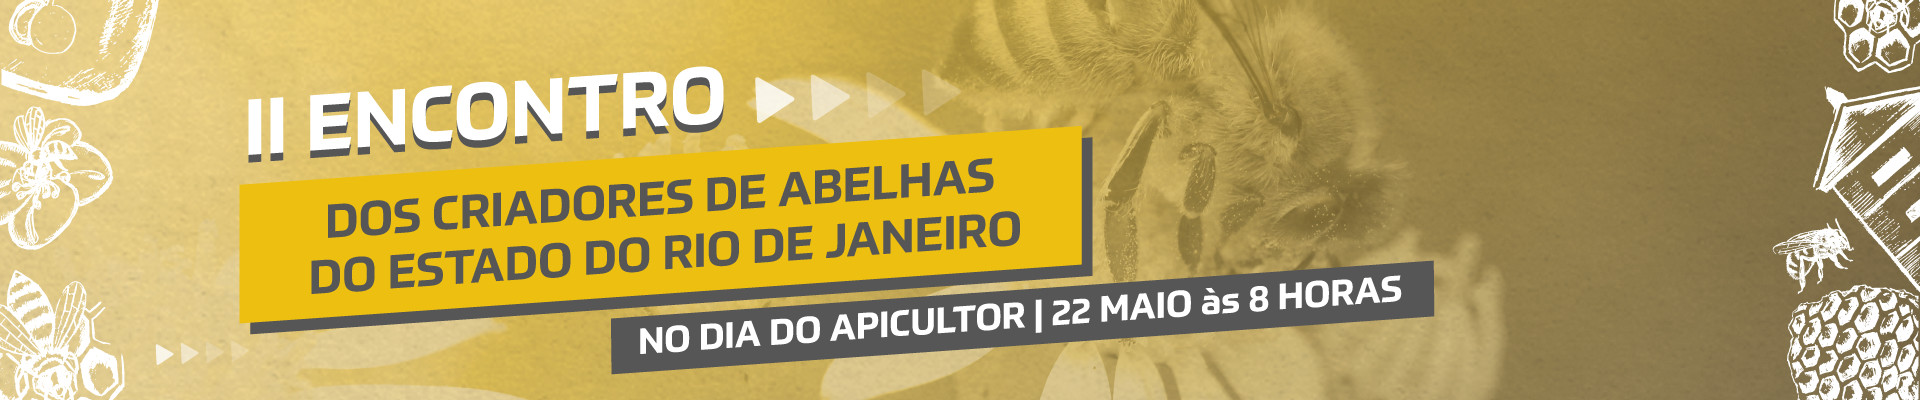 2º Encontro dos Criadores de Abelhas do Estado do Rio de Janeiro